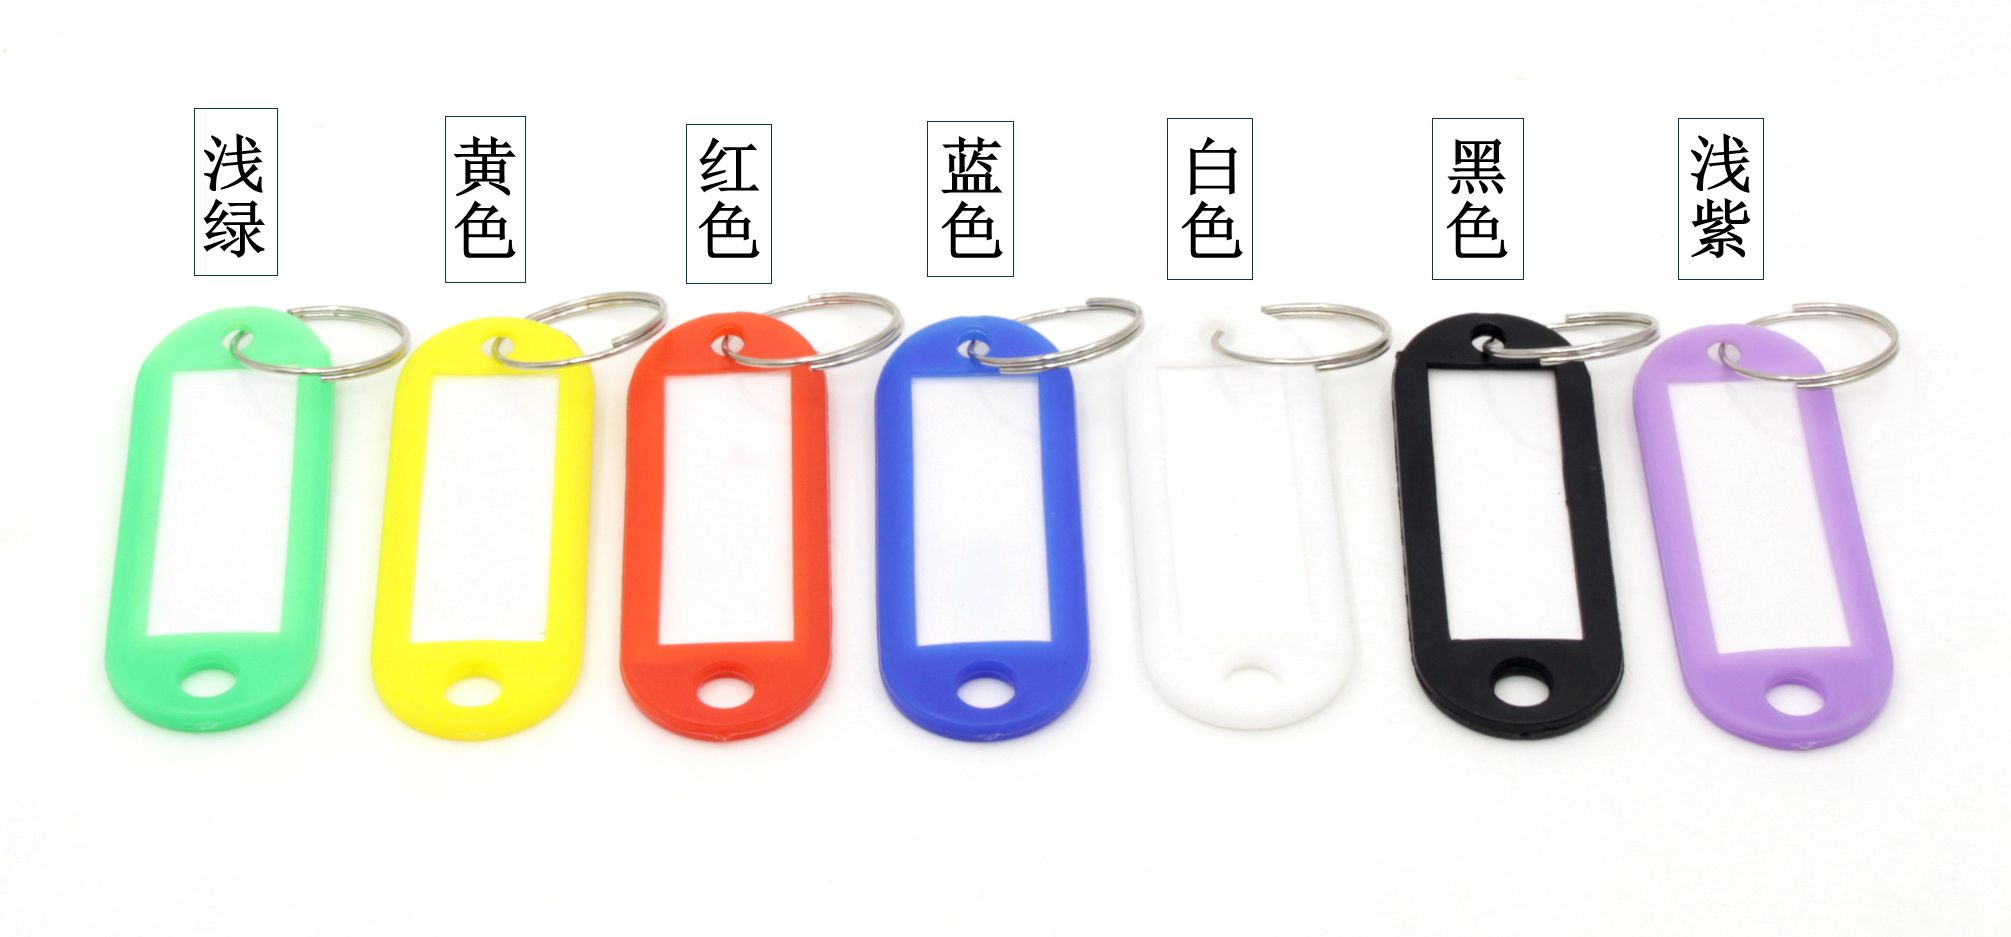 卡卡五金 5216吸卡包装圆形钥匙牌 多用途行李钥匙牌产品图